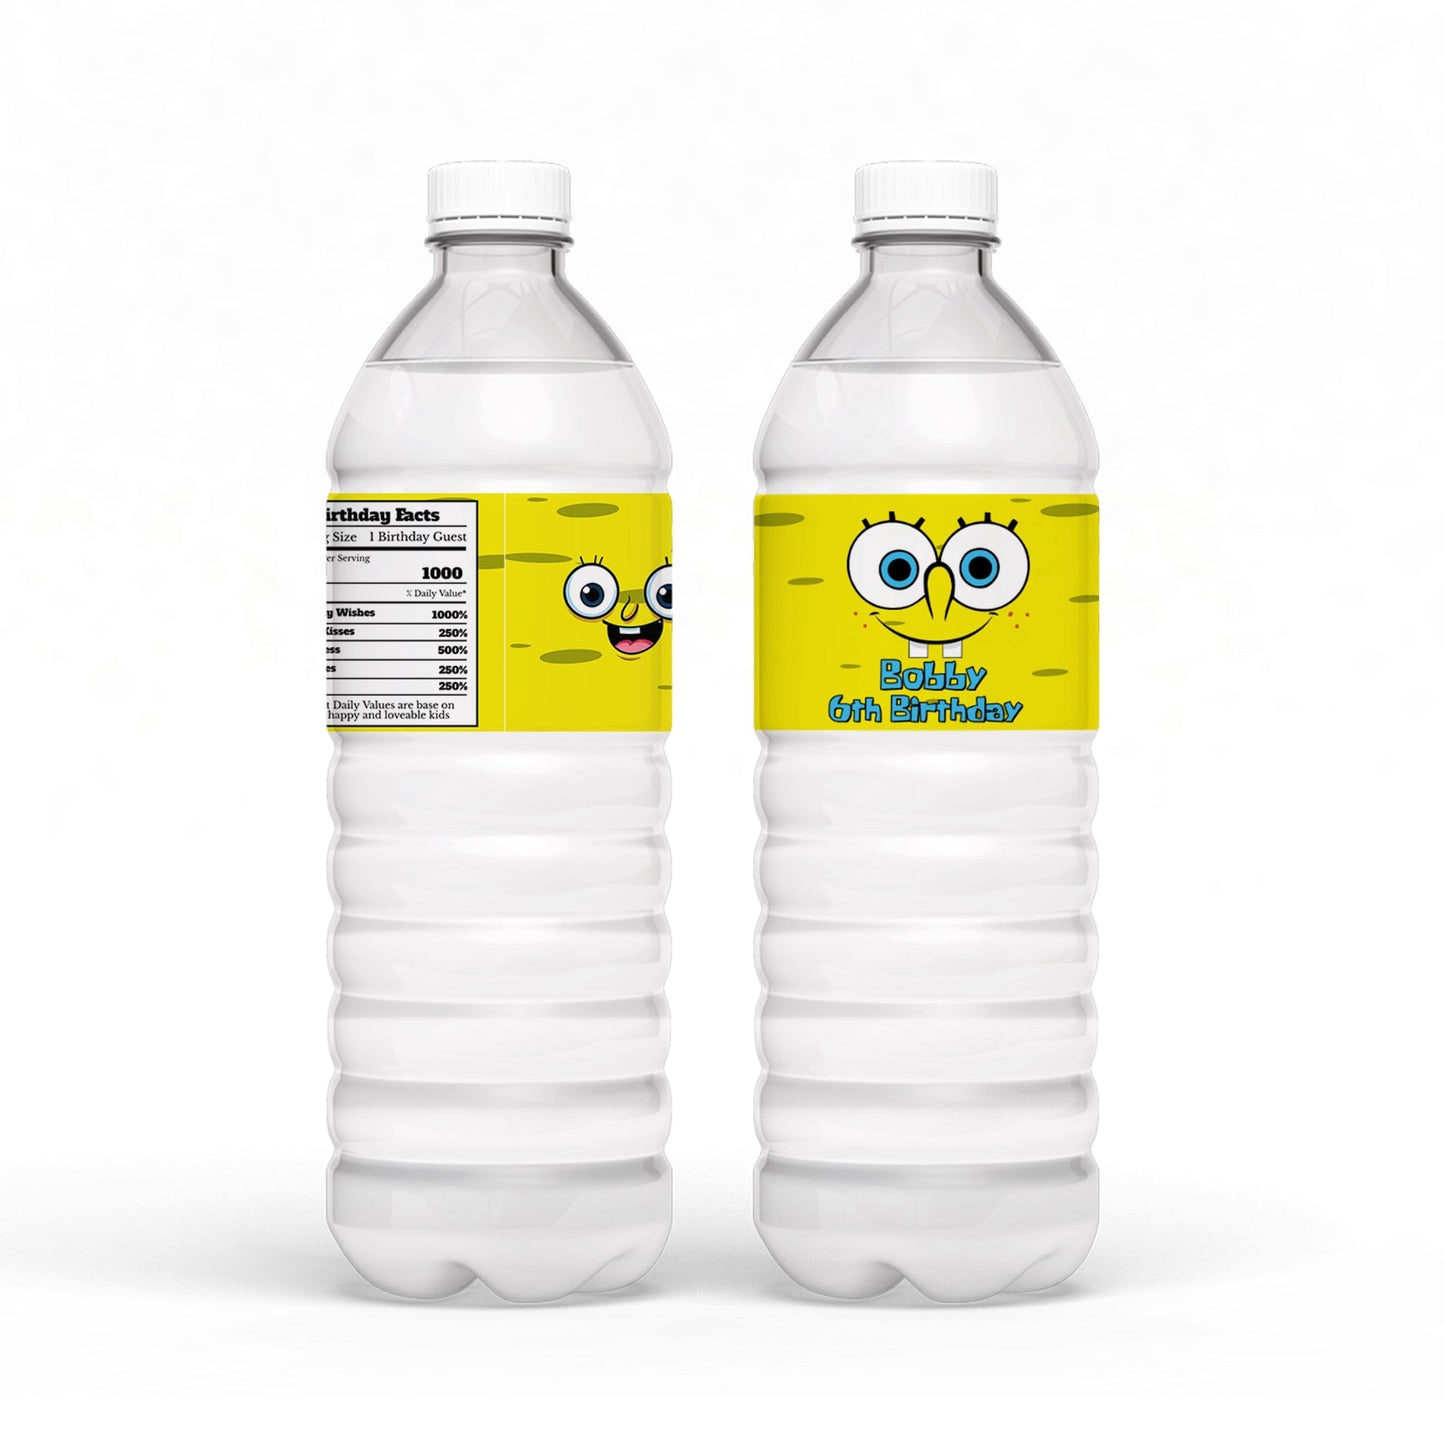 Spongebob themed water bottle labels